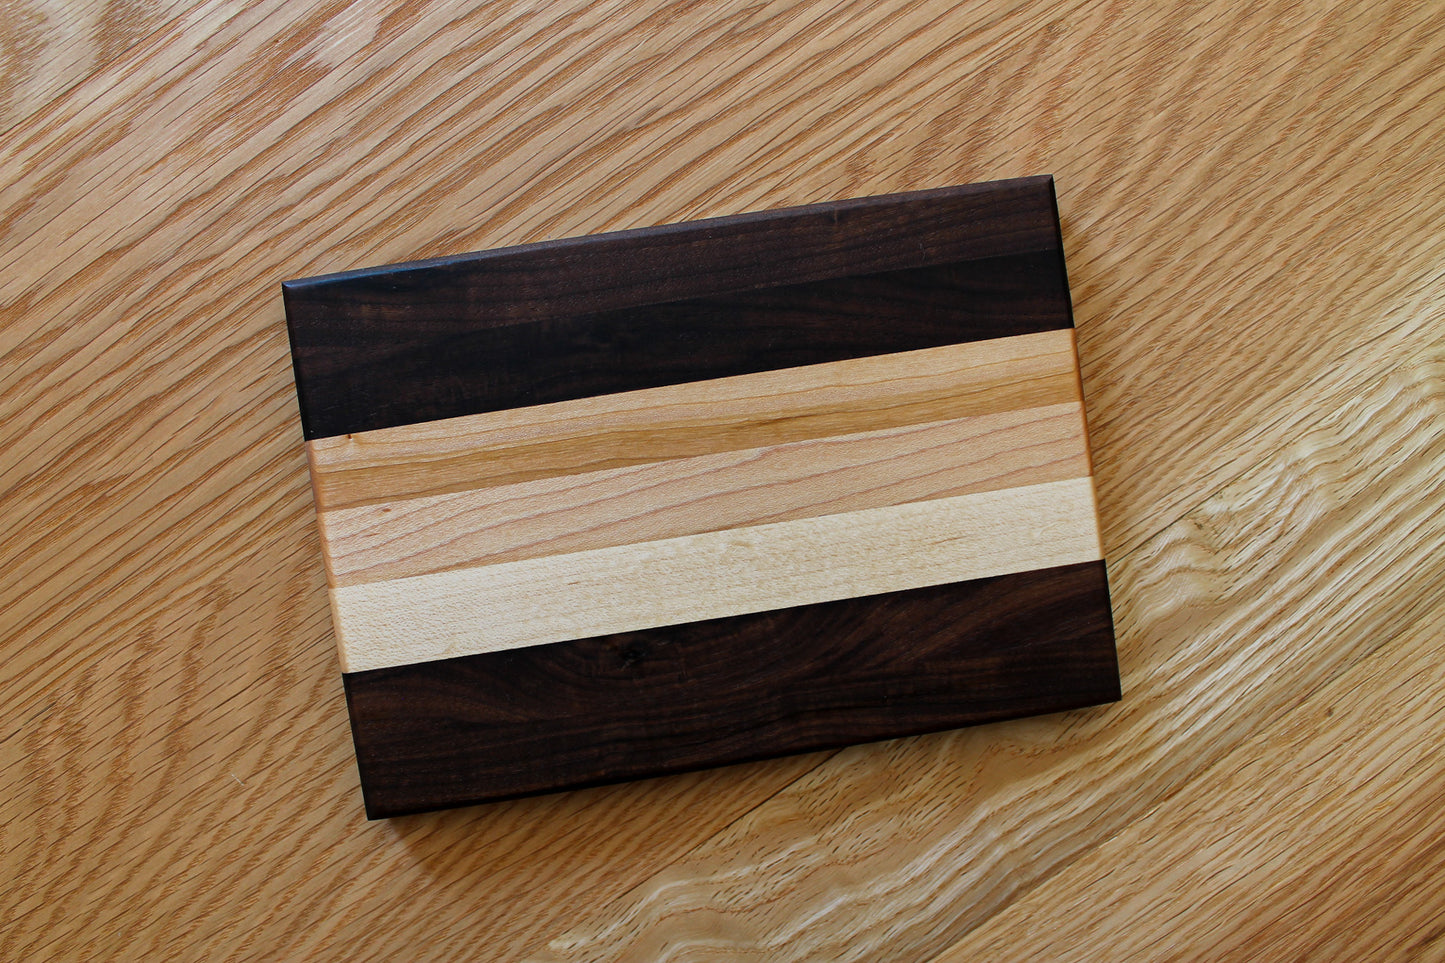 Centre Stripe Bar Board | Small Cutting Board for Small Jobs